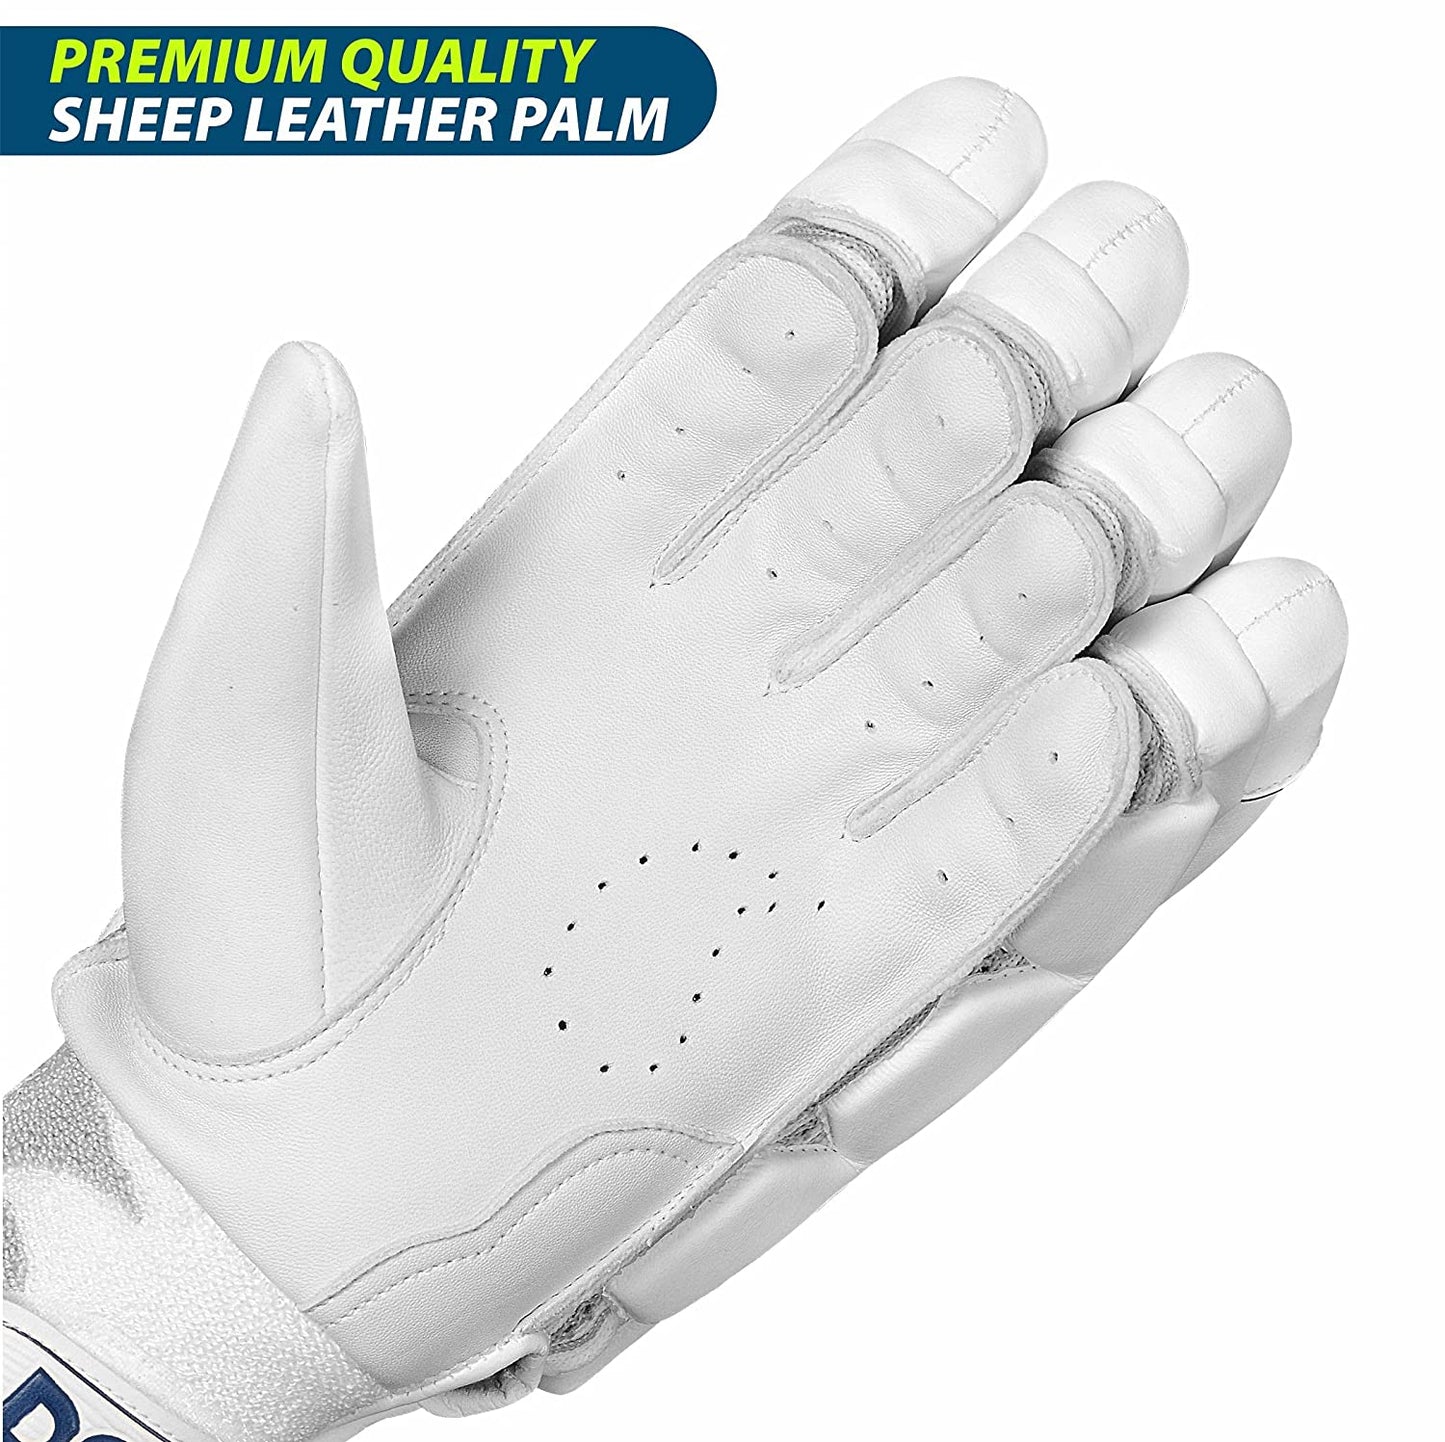 DSC Conder Pro RH Batting Gloves , White - Best Price online Prokicksports.com